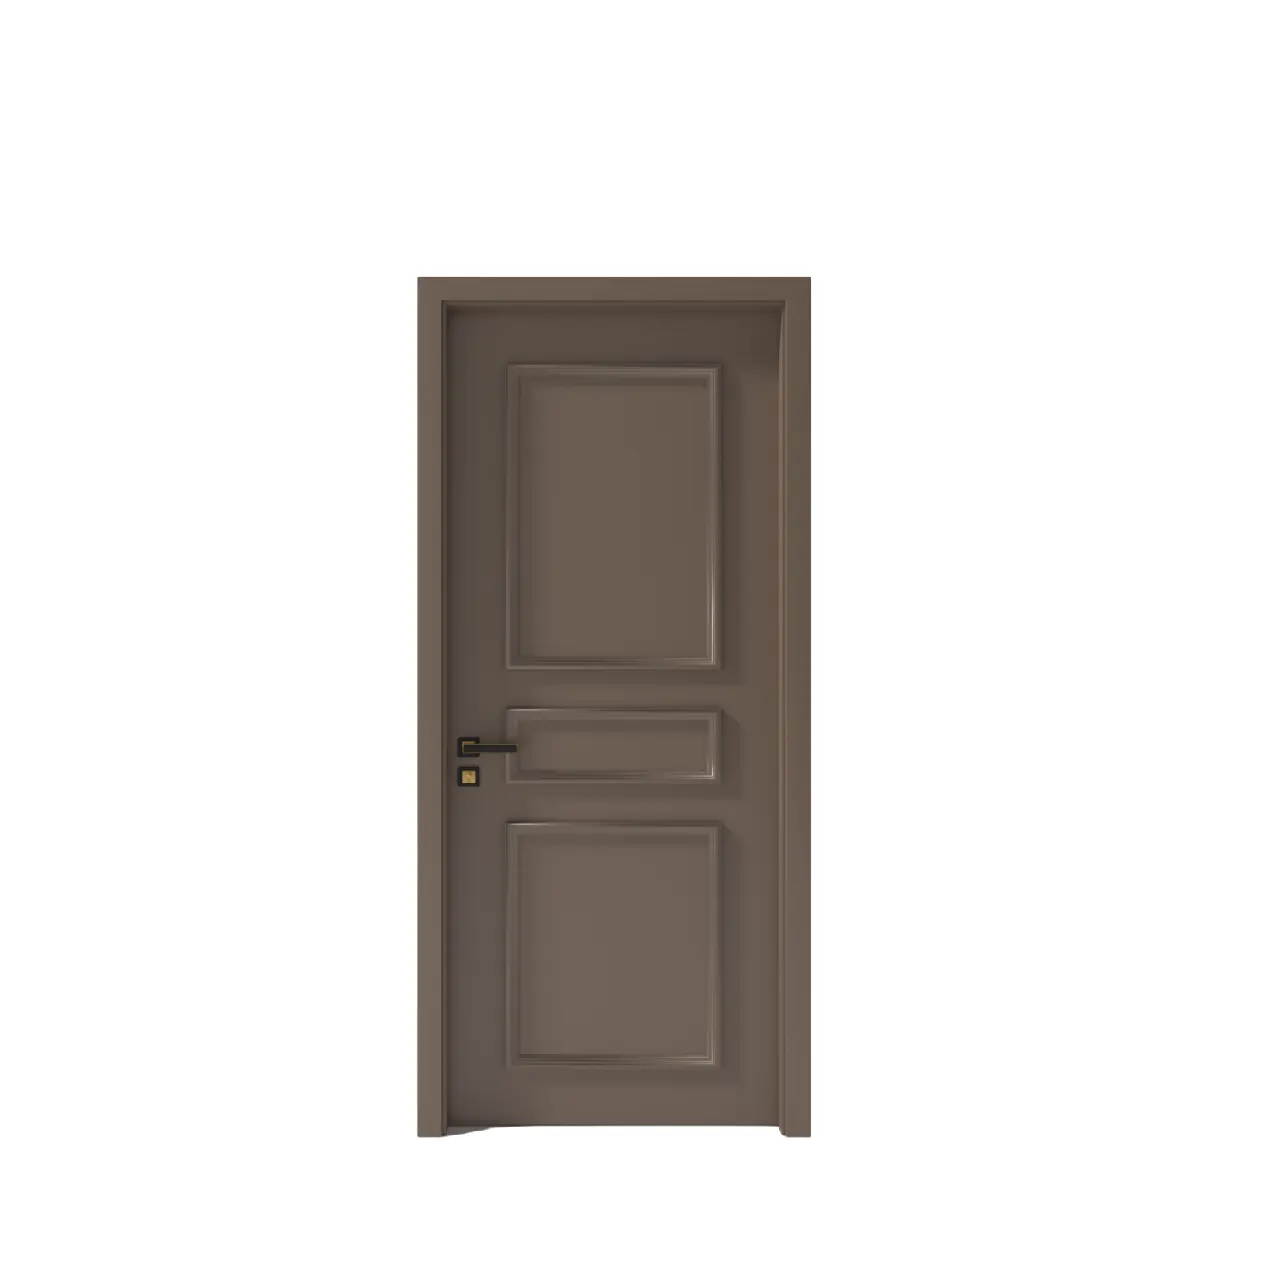 Porta moderna e impermeável - porta interna composta Konig modelo D0183 à prova de termitas de alta qualidade exportada do Vietnã